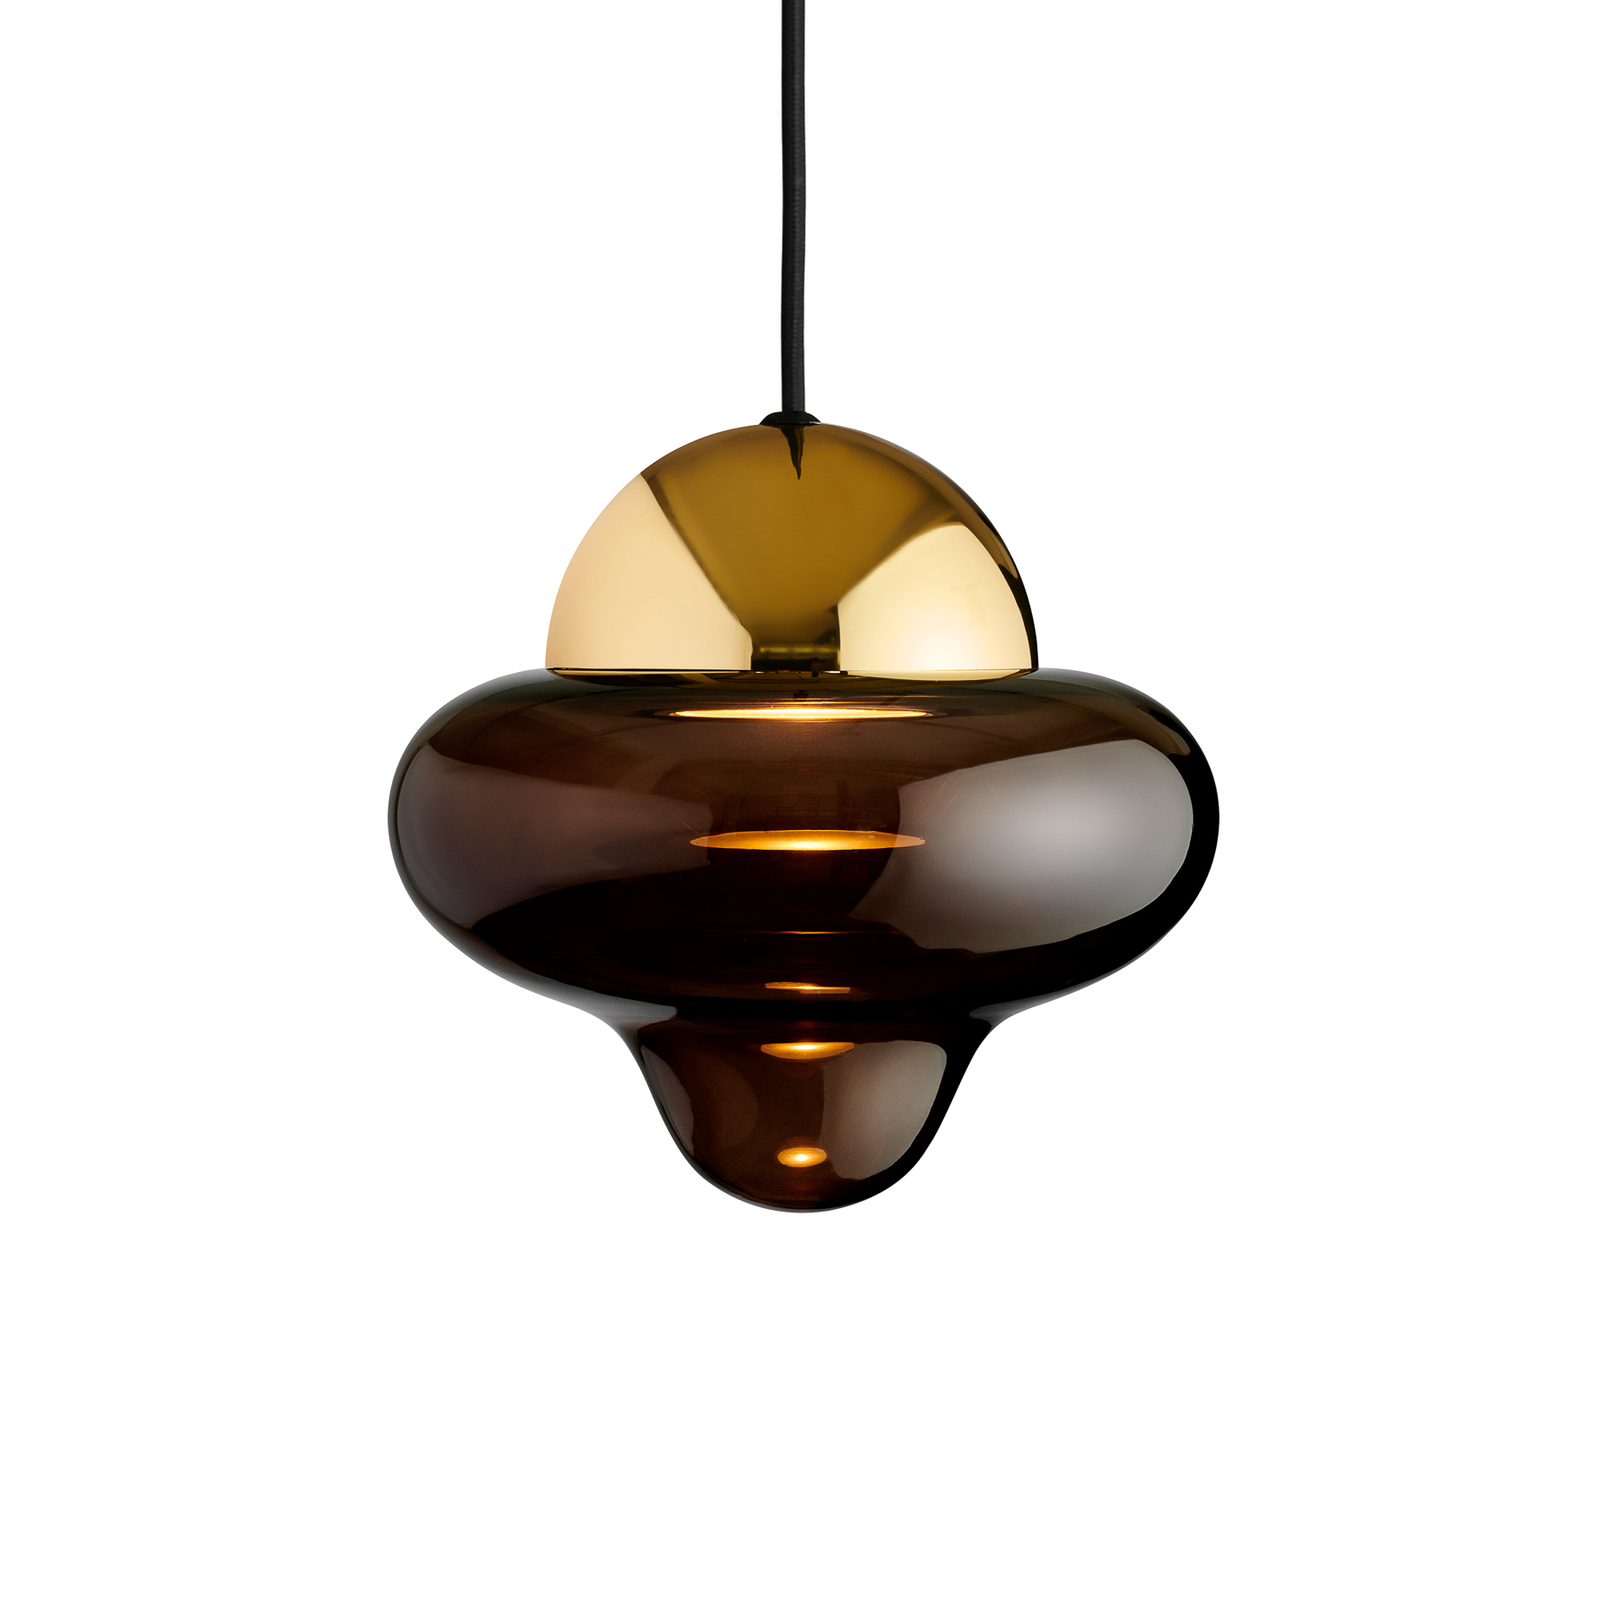 Suspension LED Nutty, brun / doré, Ø 18,5 cm, verre